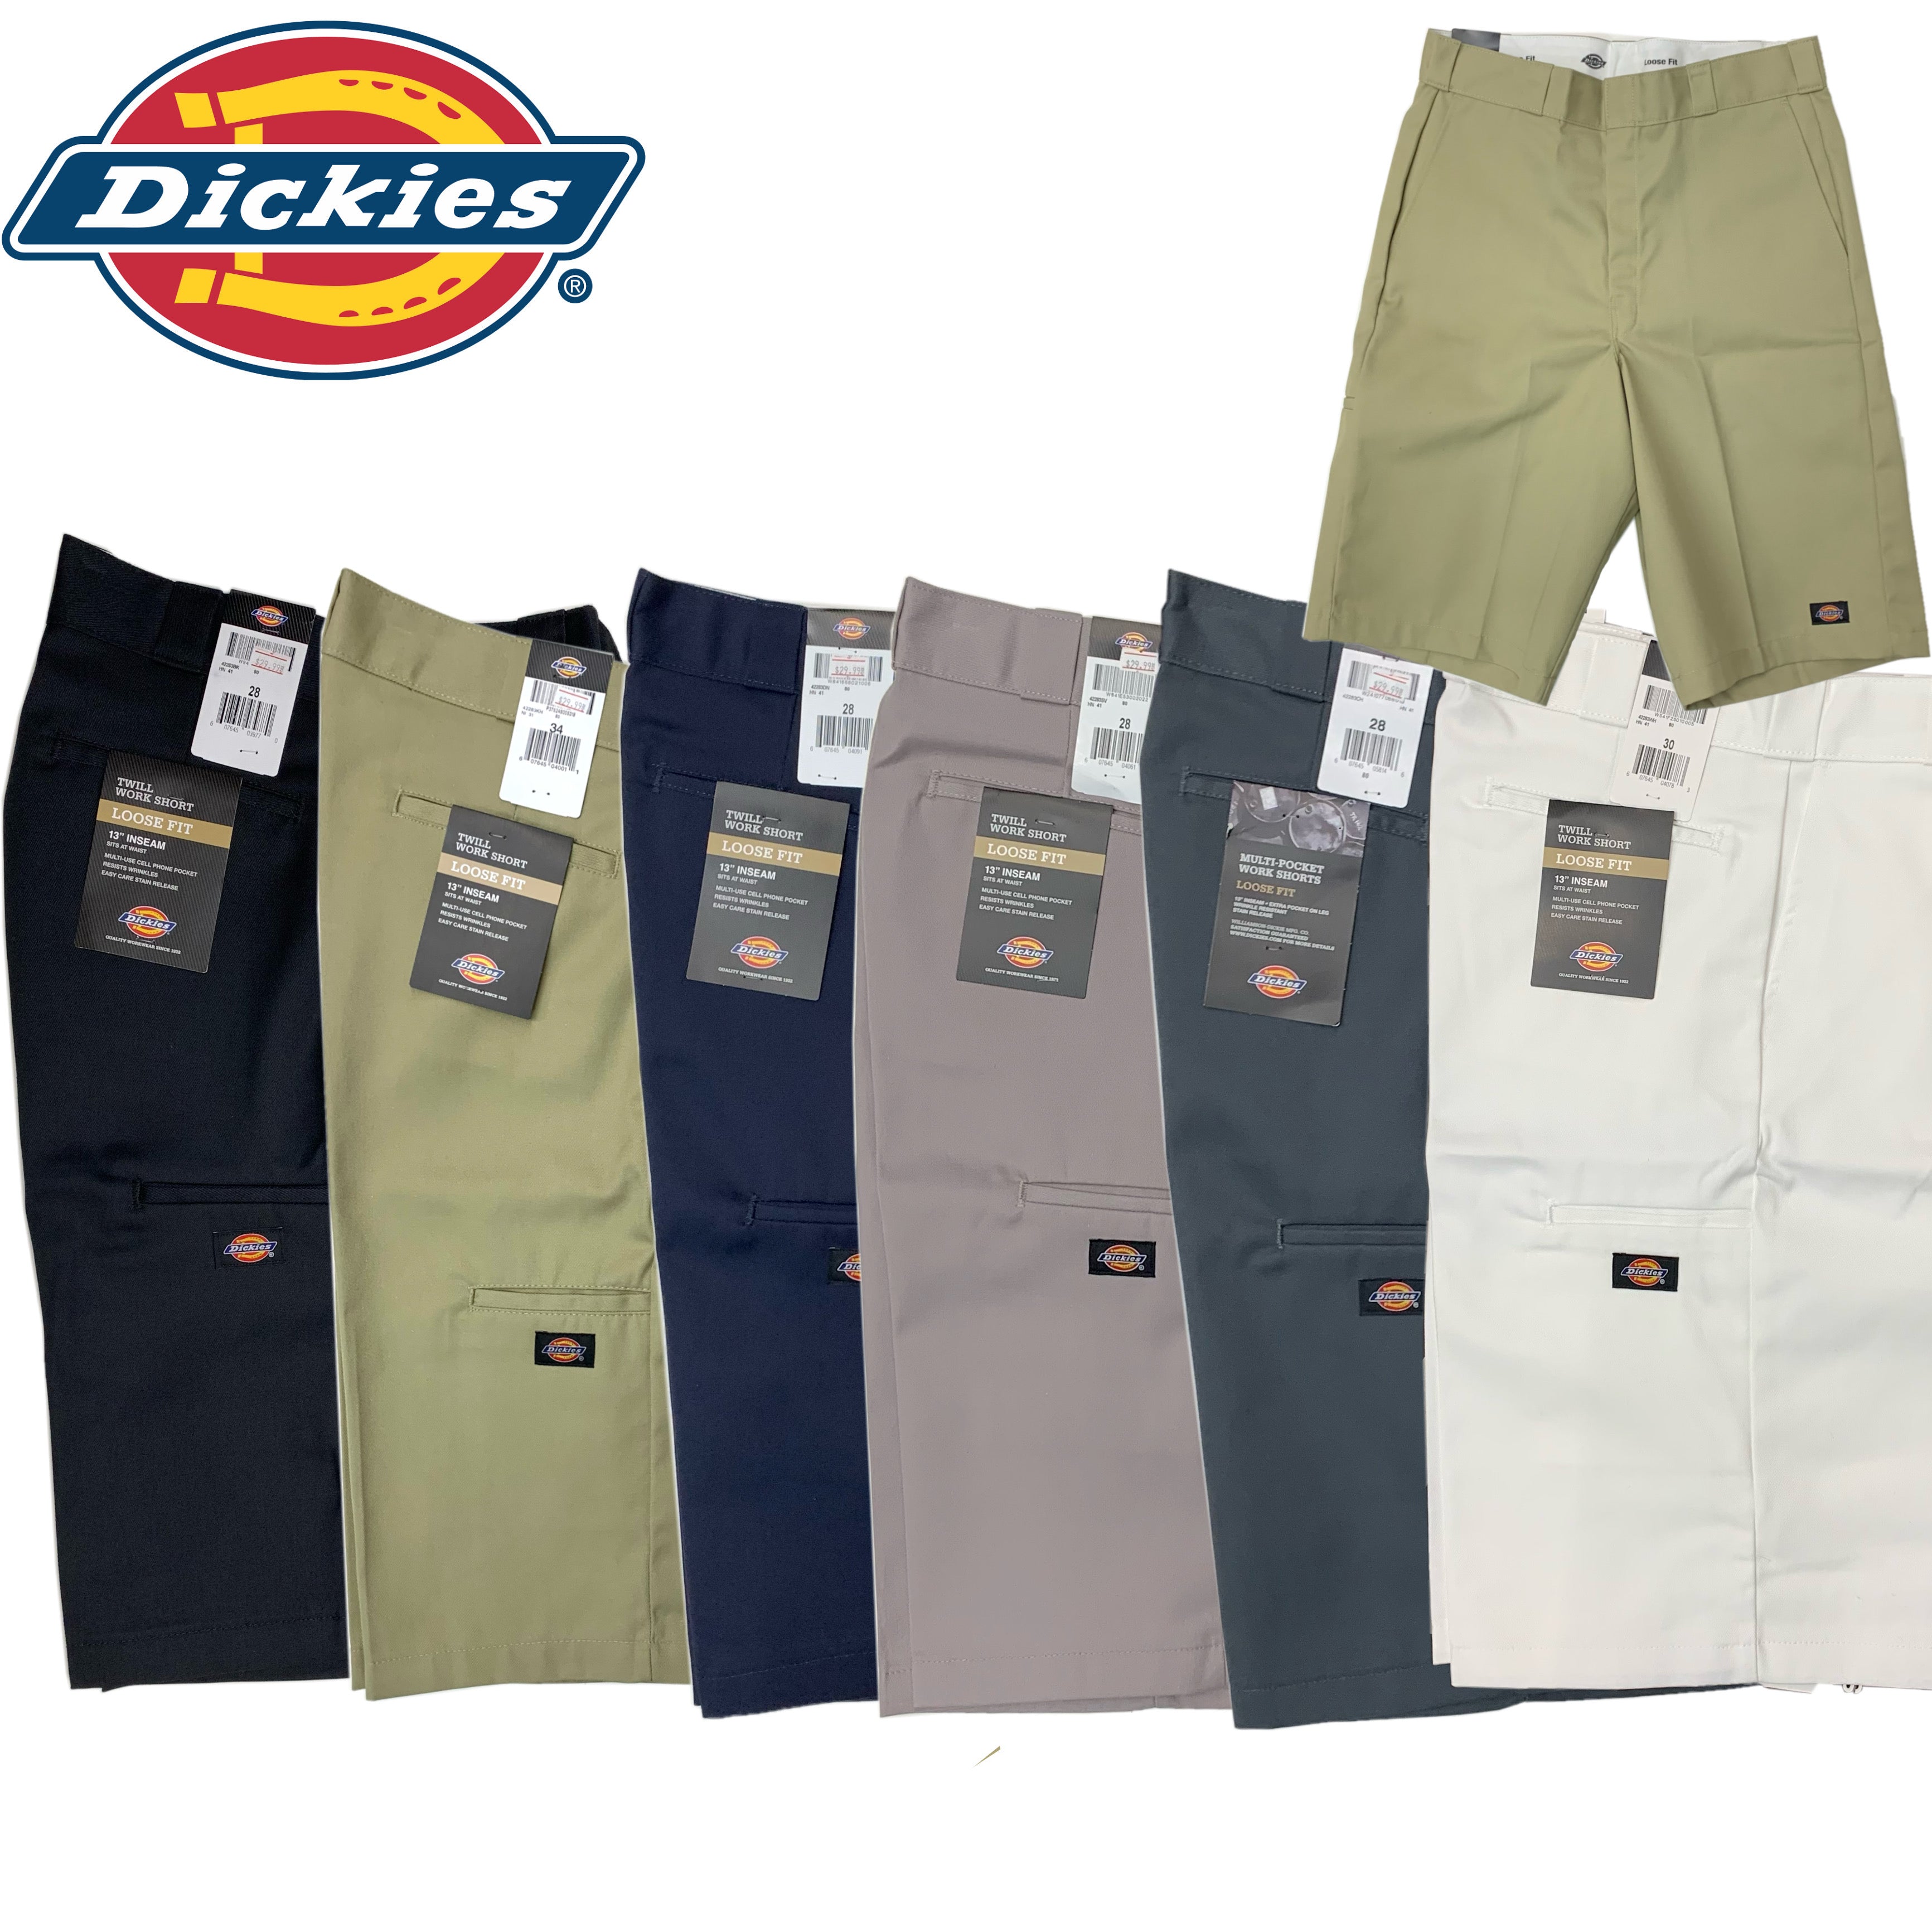 Dickies Original Fit 874 Pants (Size 28 - 40)